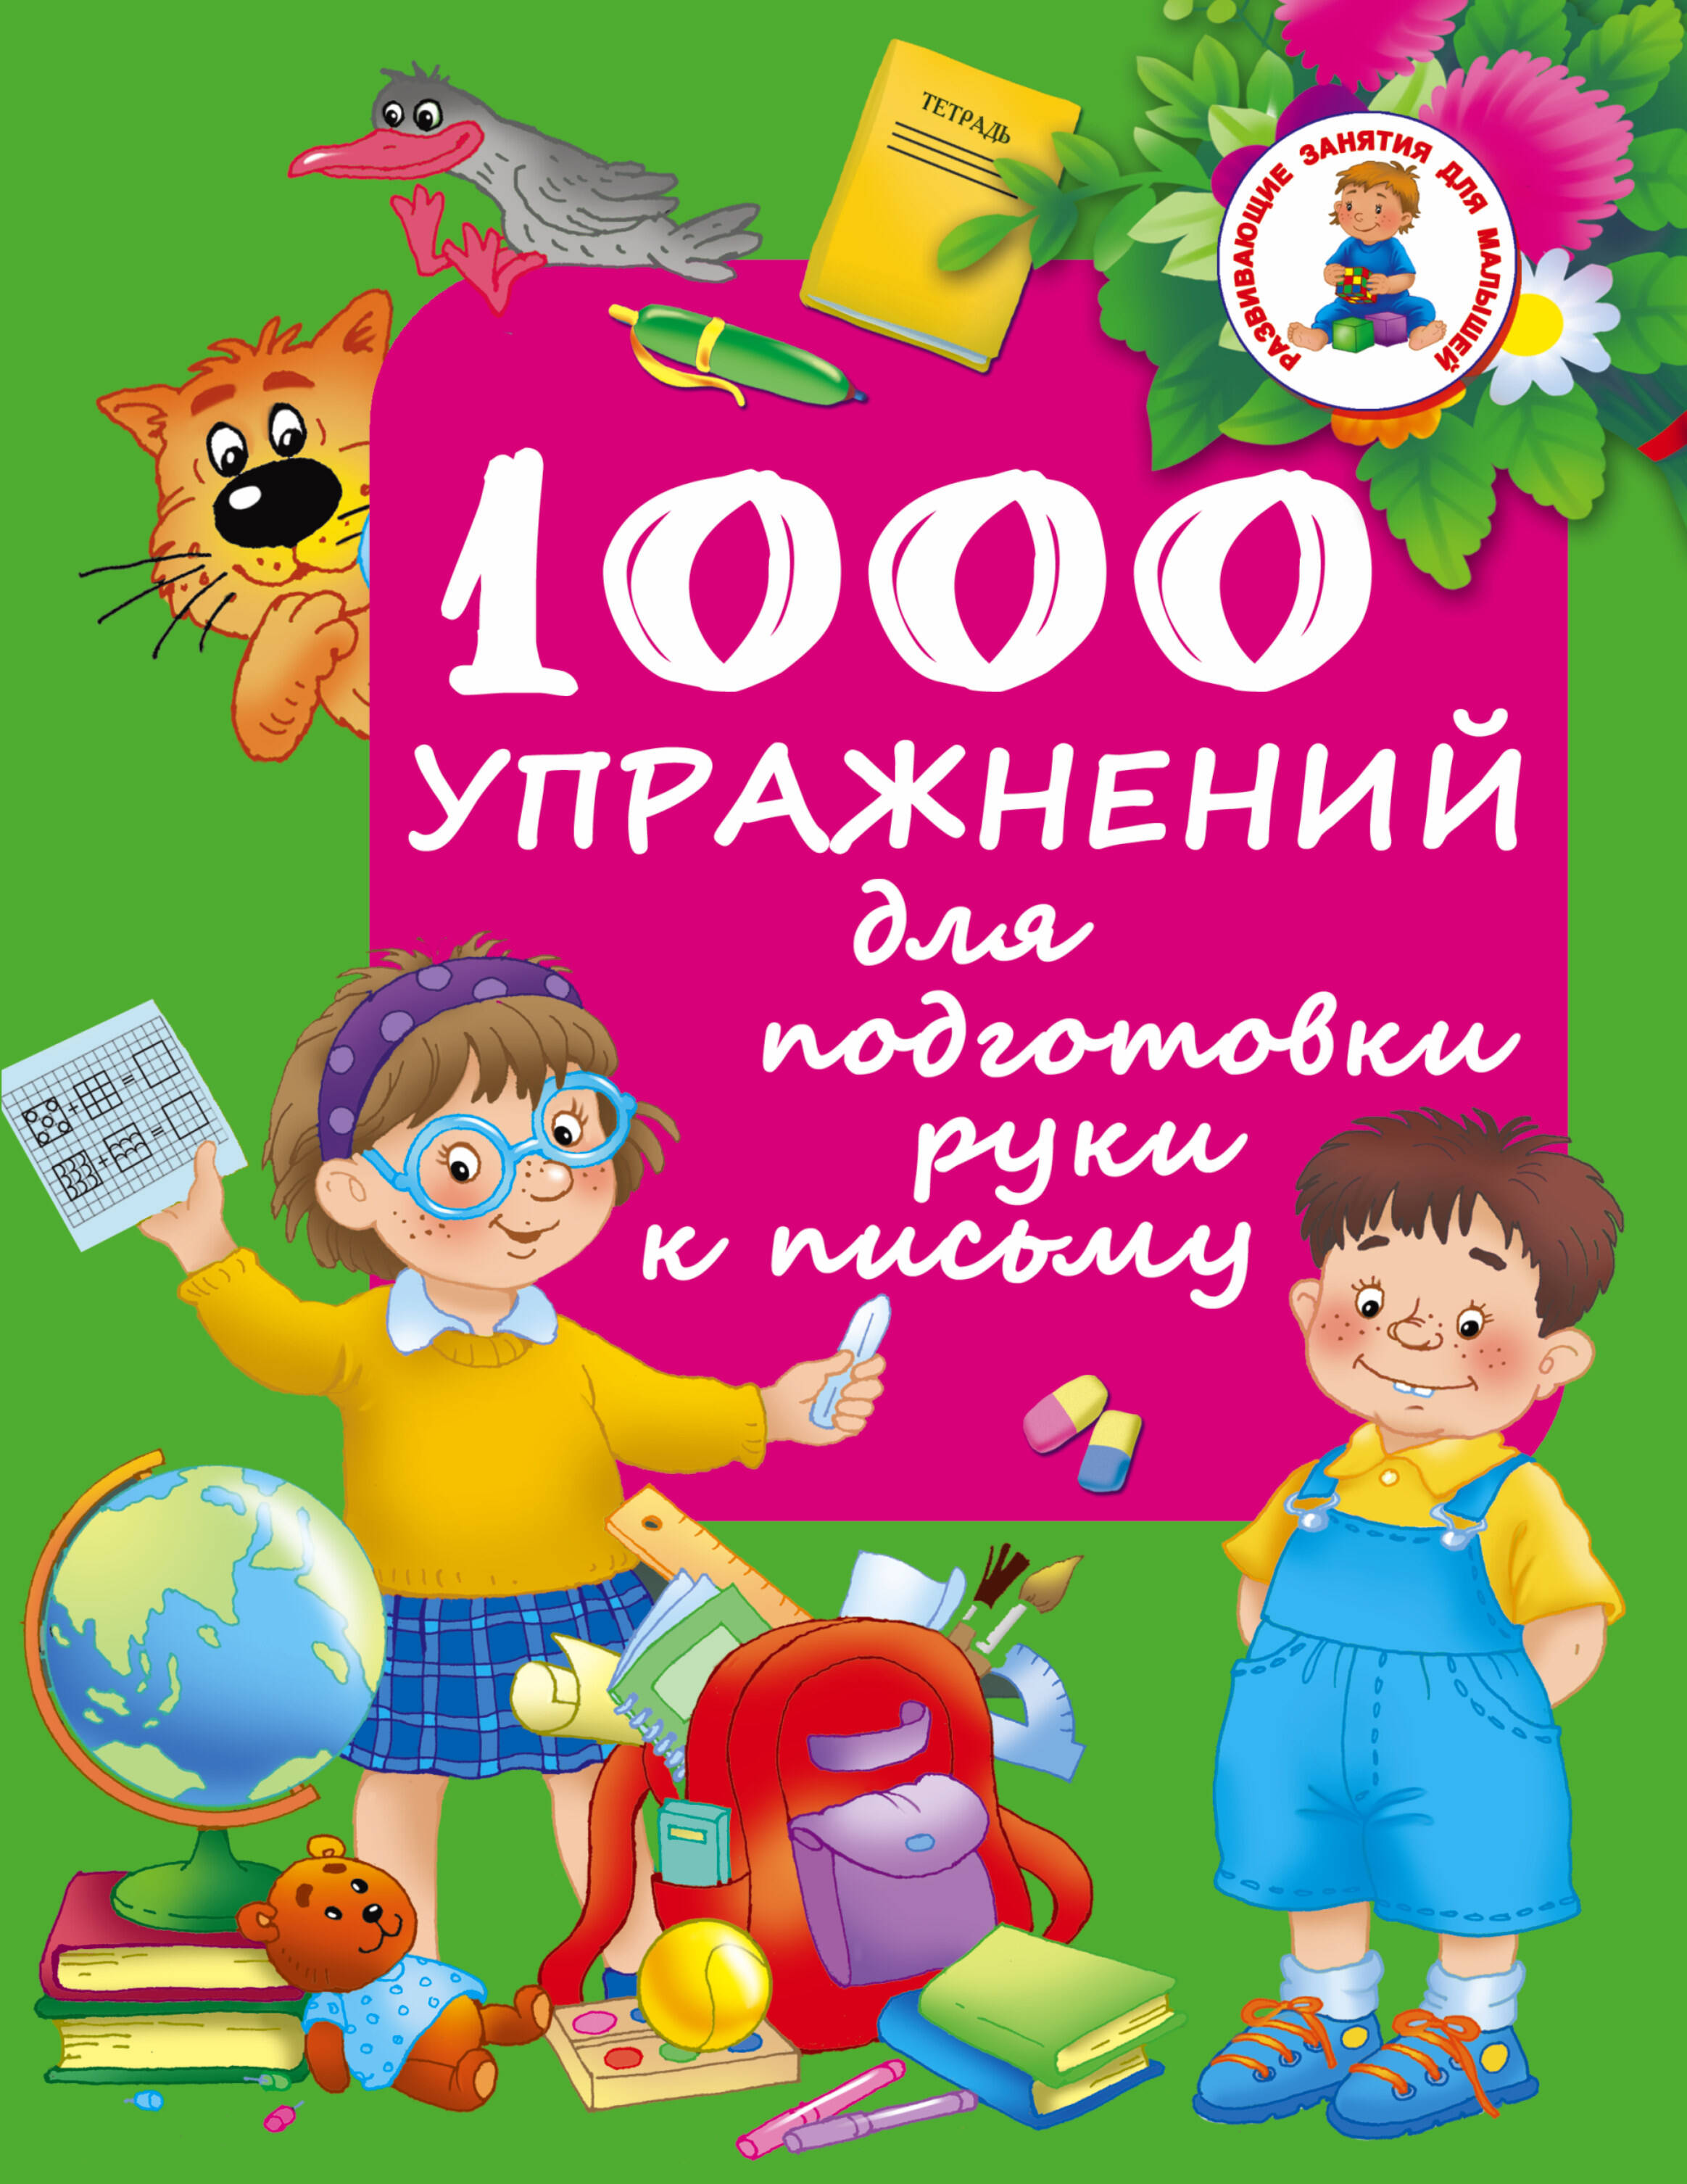 Дмитриева Валентина Геннадьевна 1000 упражнений для подготовки руки письму - страница 0